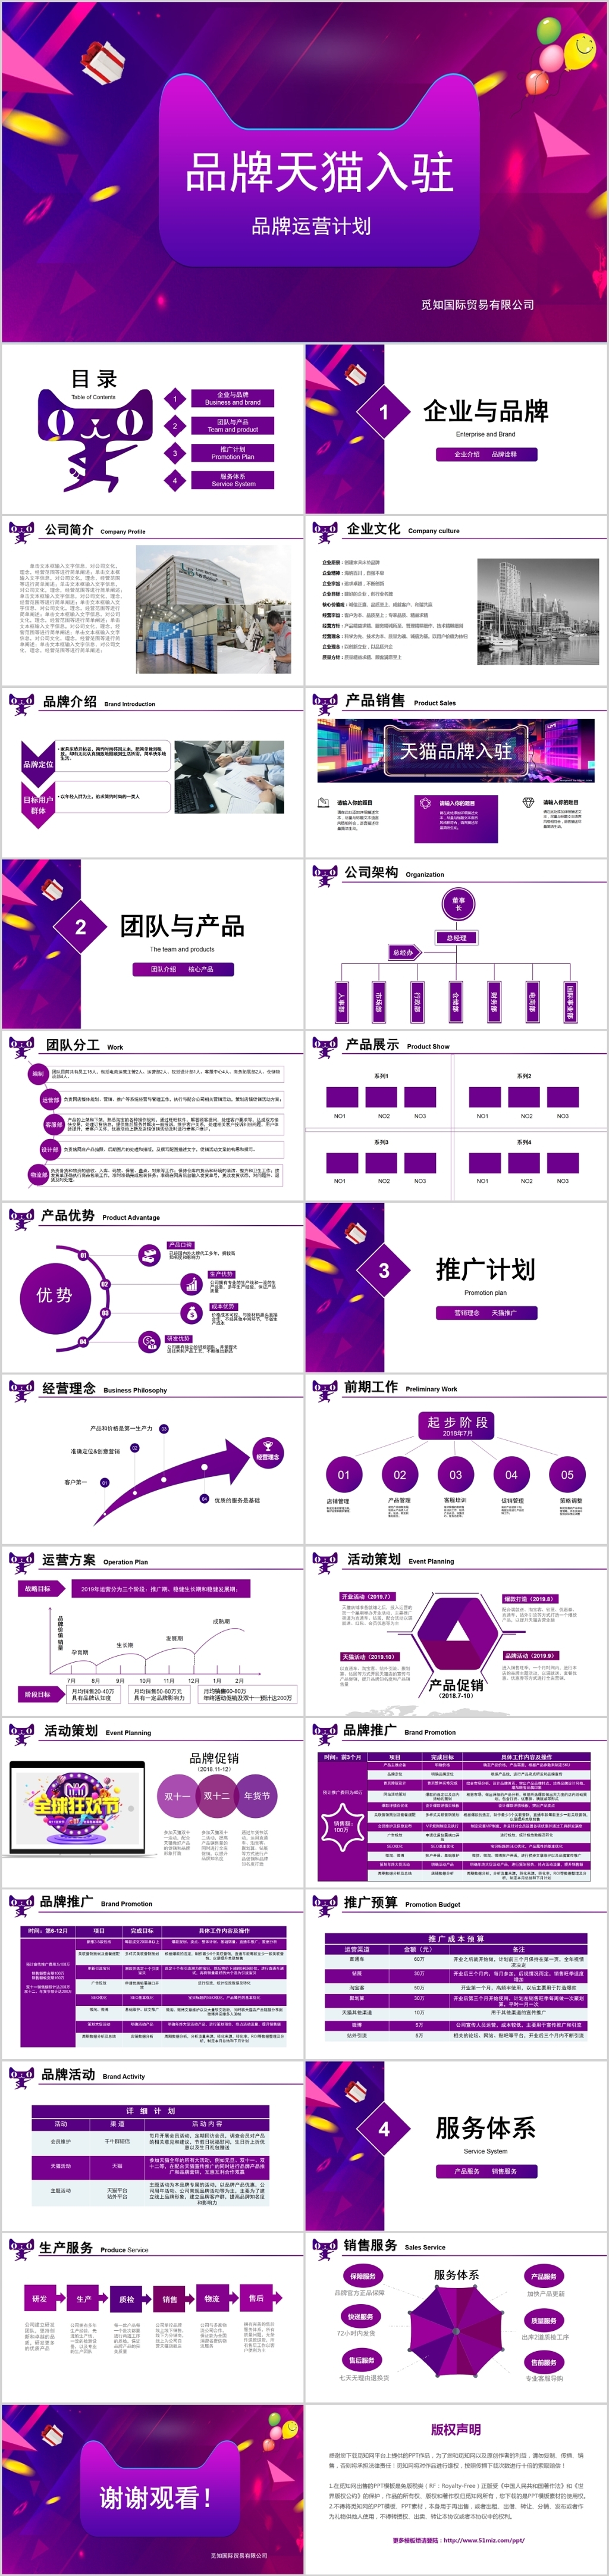 紫色简约商务风格品牌天猫入驻运营计划PPT动态模板